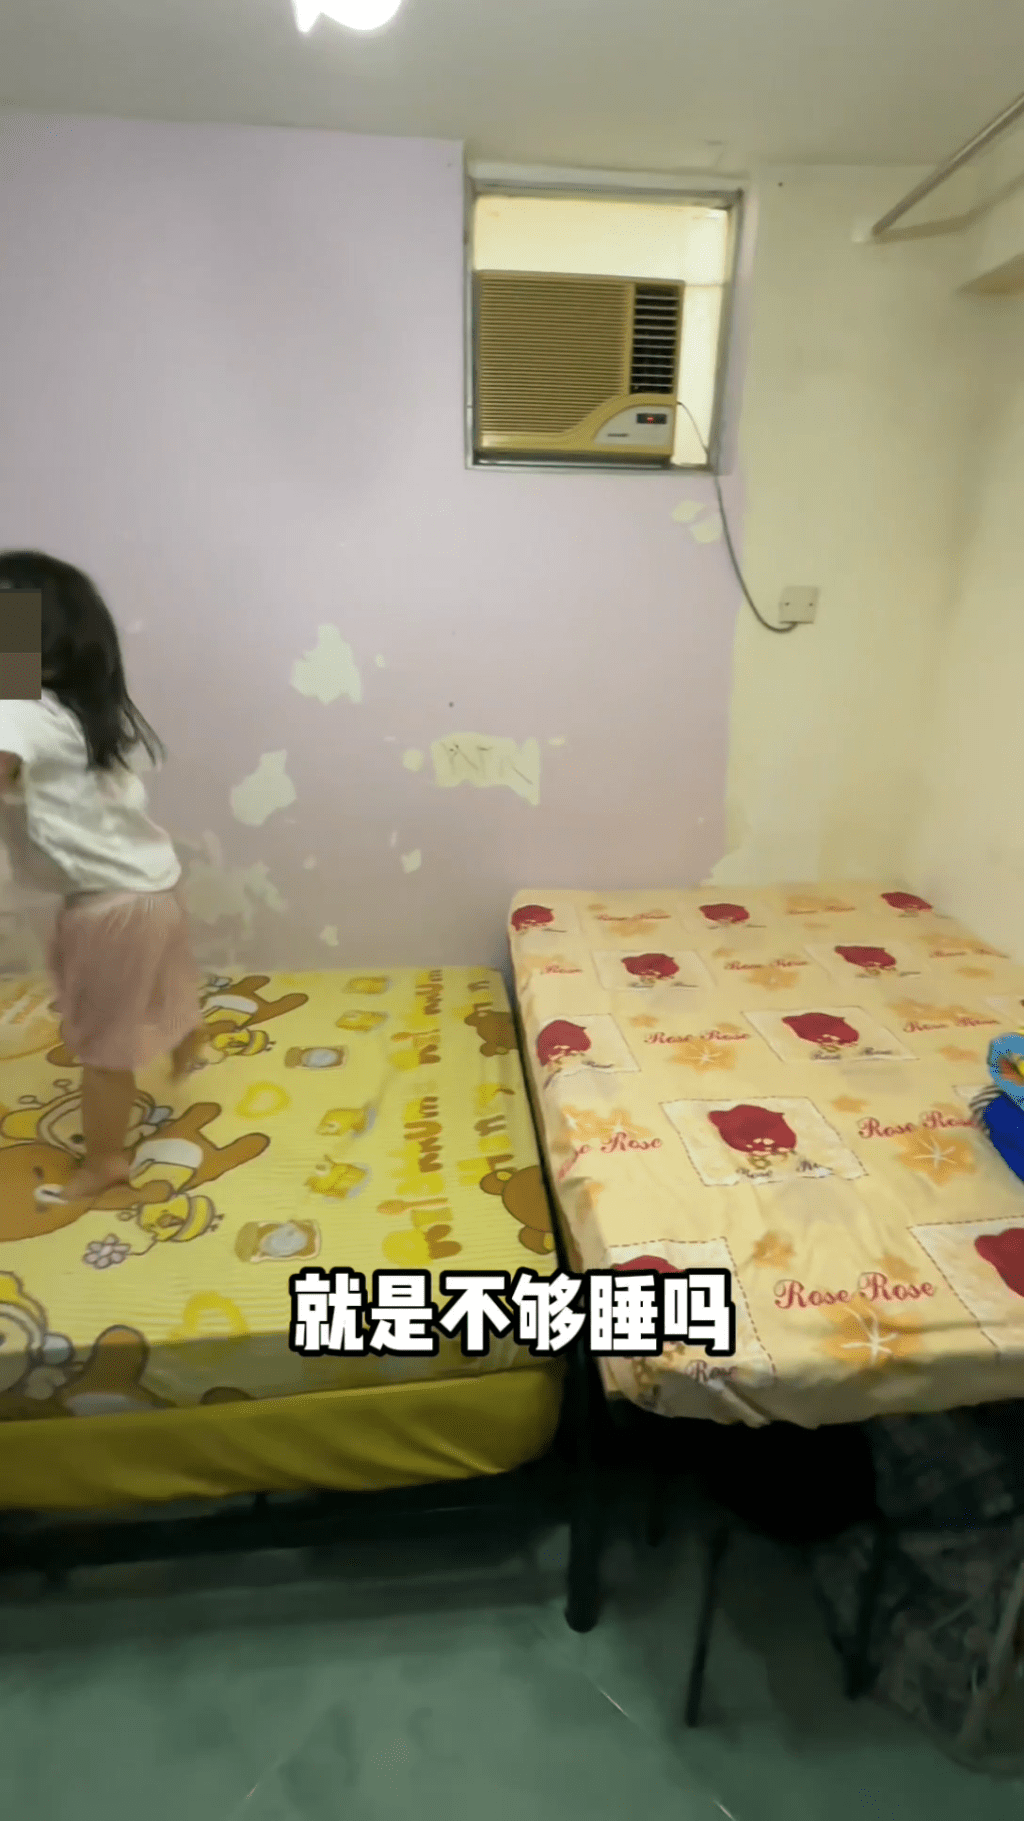 她在睡床前又加了一張小床，可供一名小孩在此睡覺。